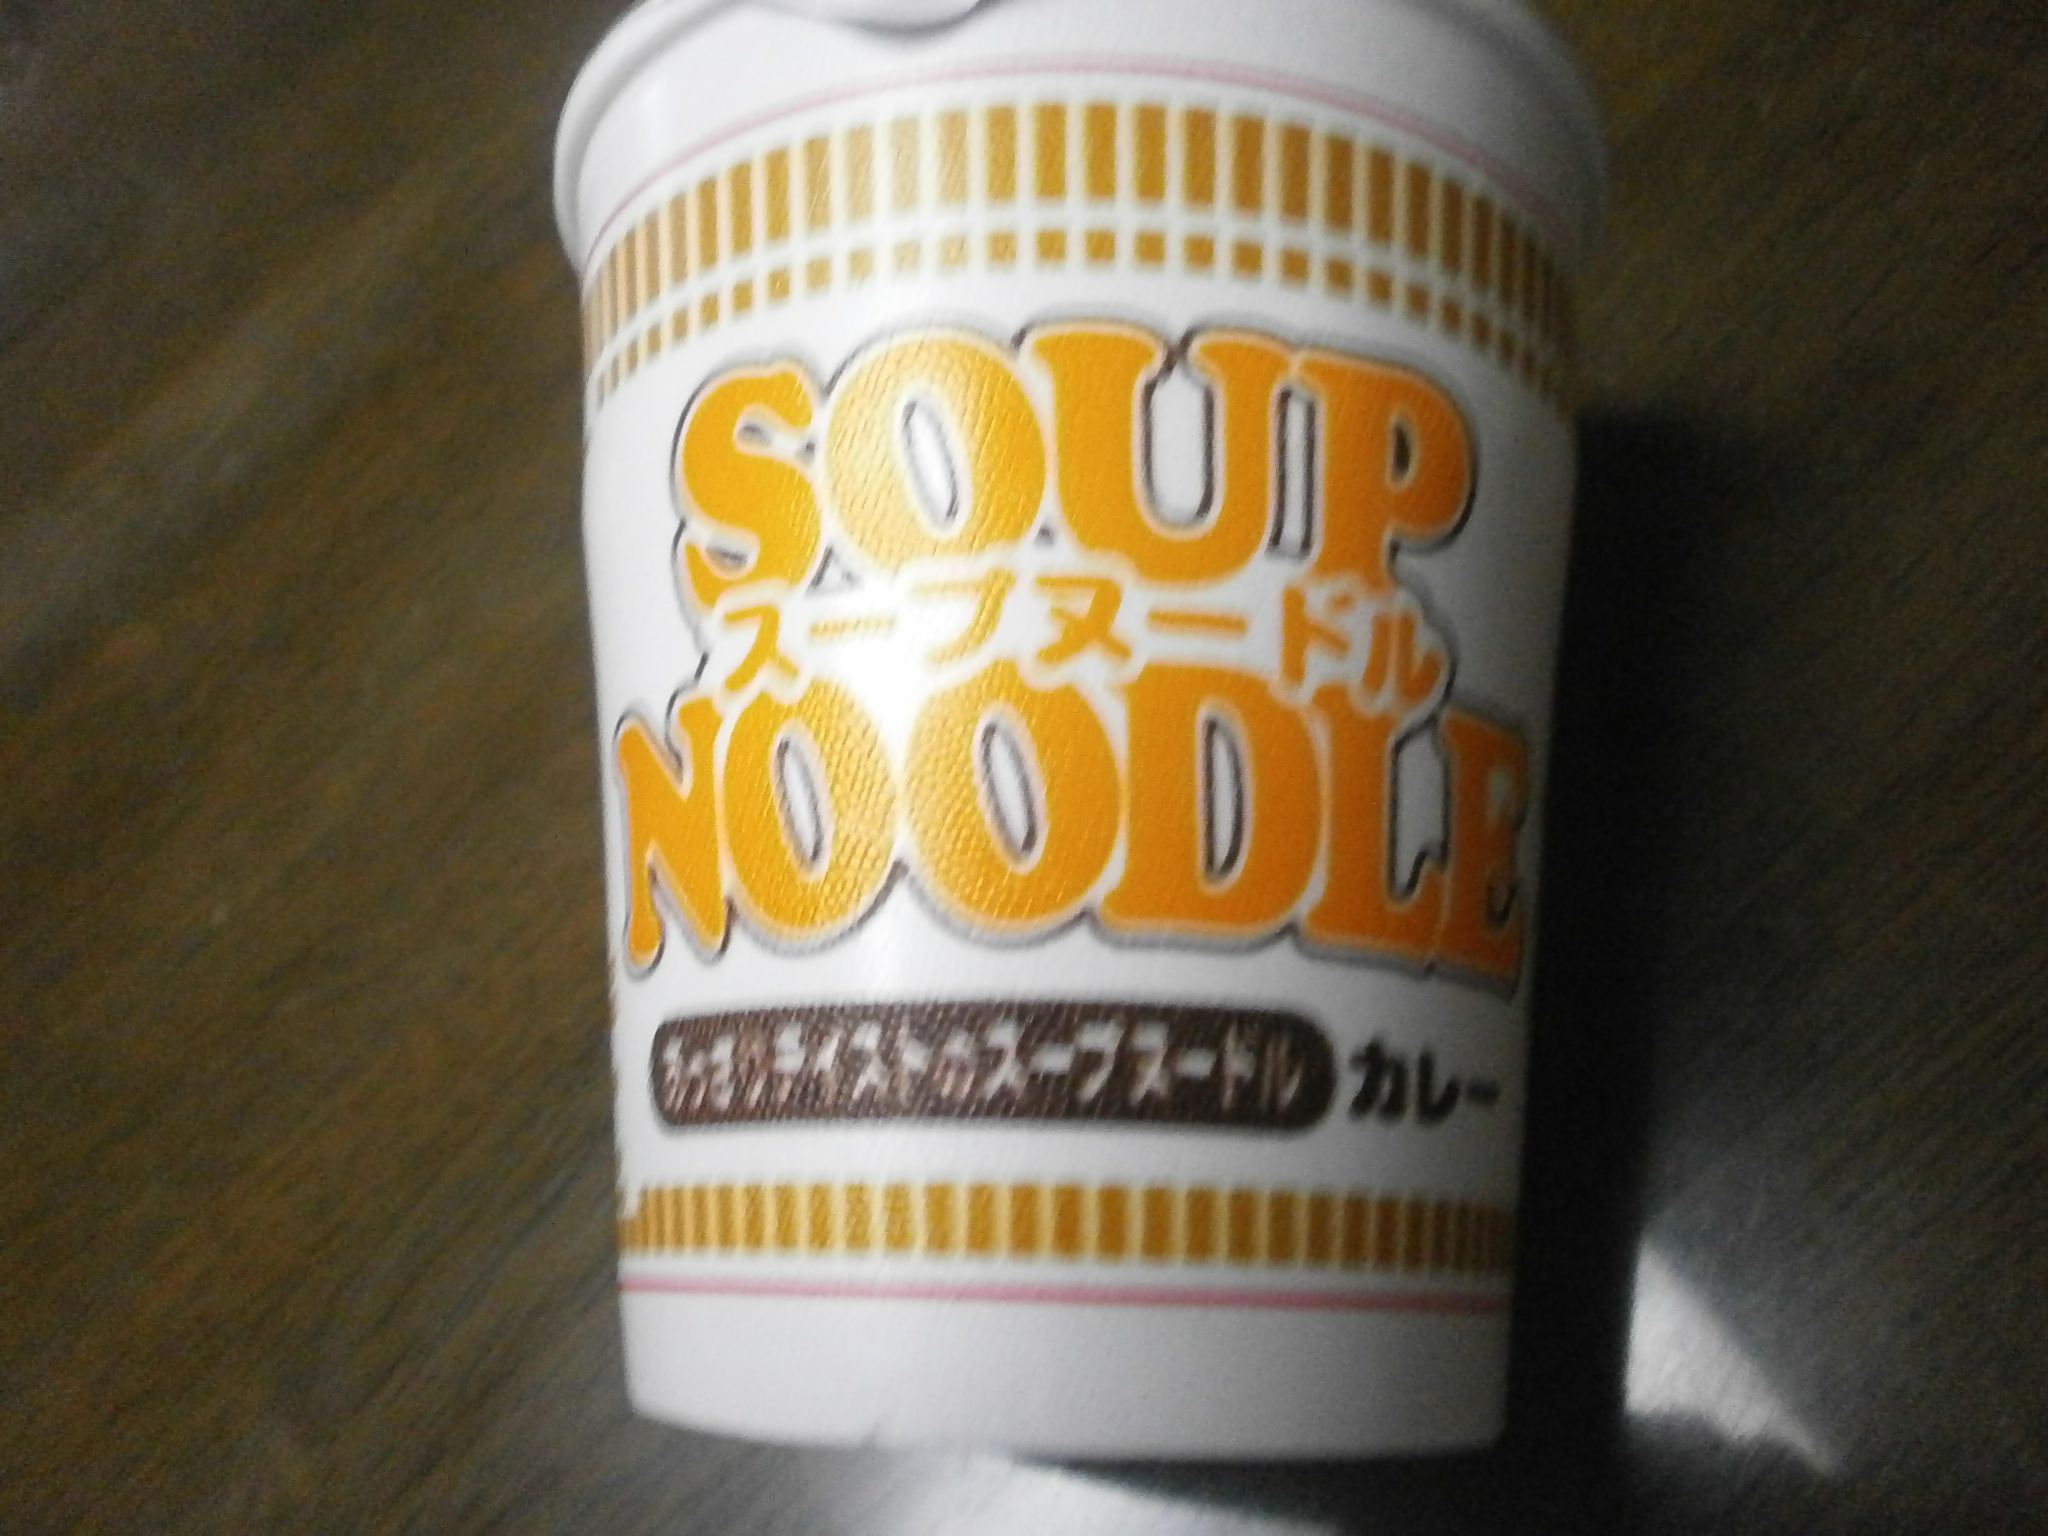 Che ad alto contenuto calorico? Noodle Soup (Curry)? Noodle soup (frutti di mare)?